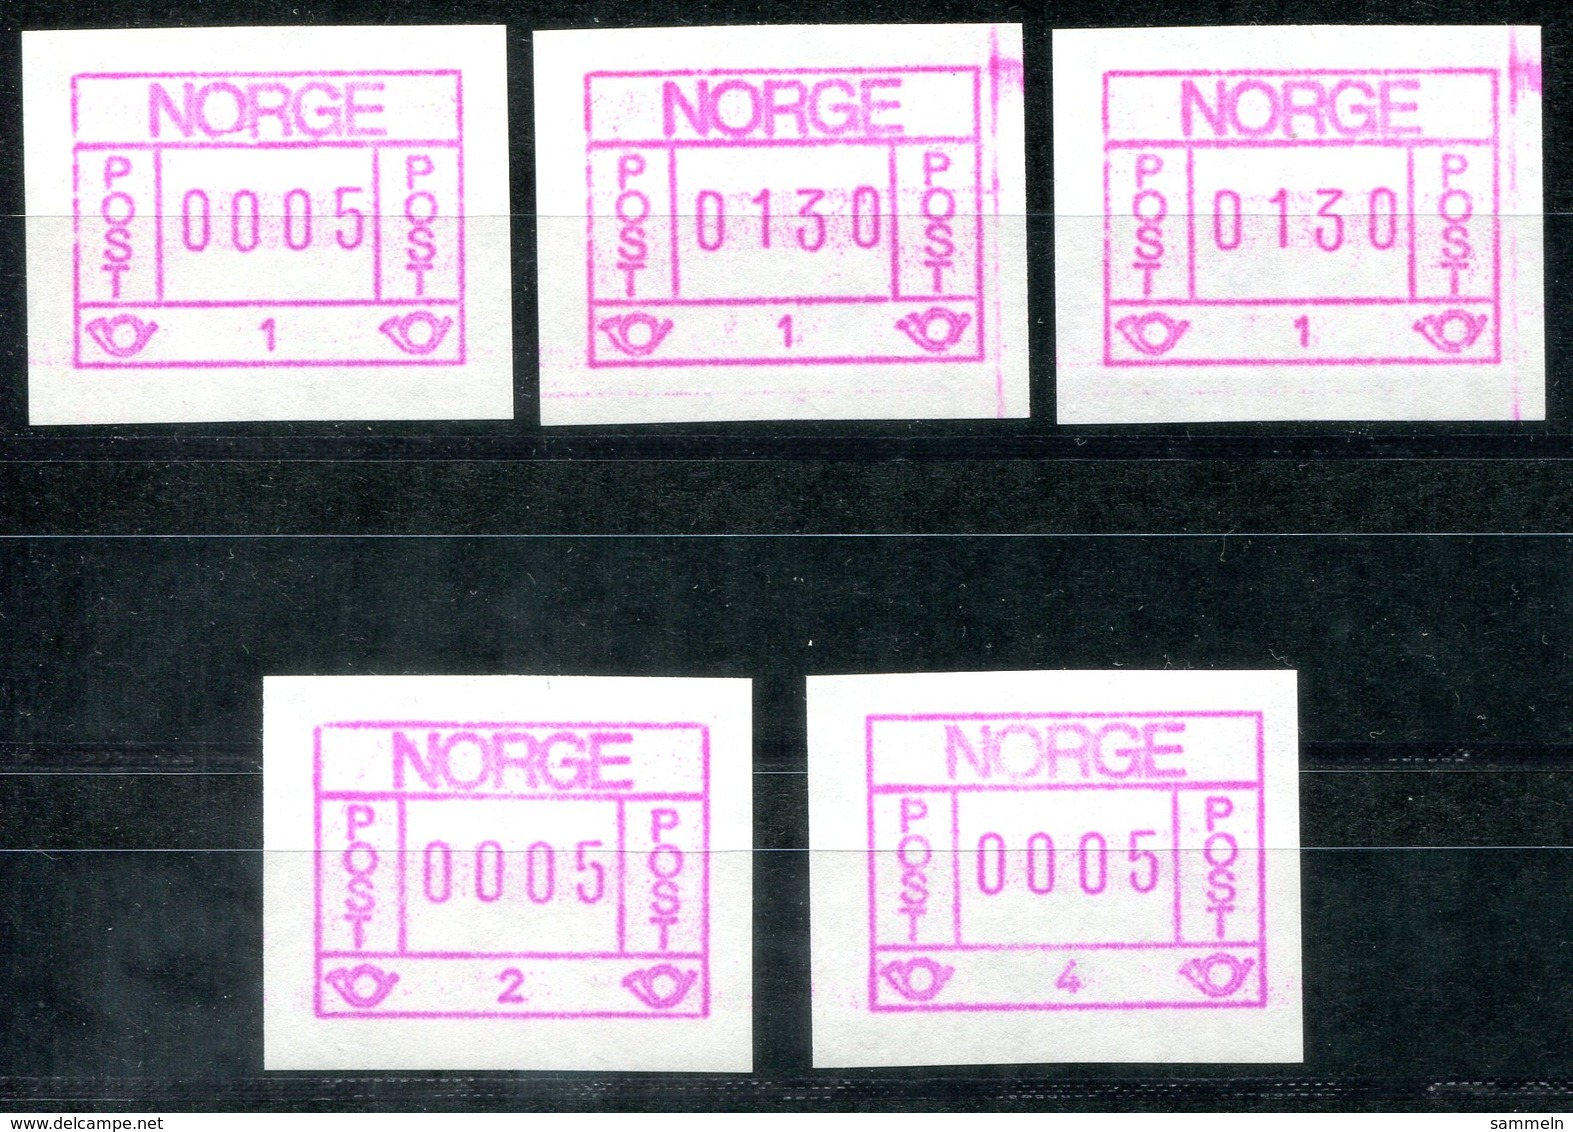 5606 - NORWEGEN - Automatenmarken 1.1 (3 Stück, Davon 2 Mit Farbrand), 1.2. + 1.3 - Automatenmarken [ATM]